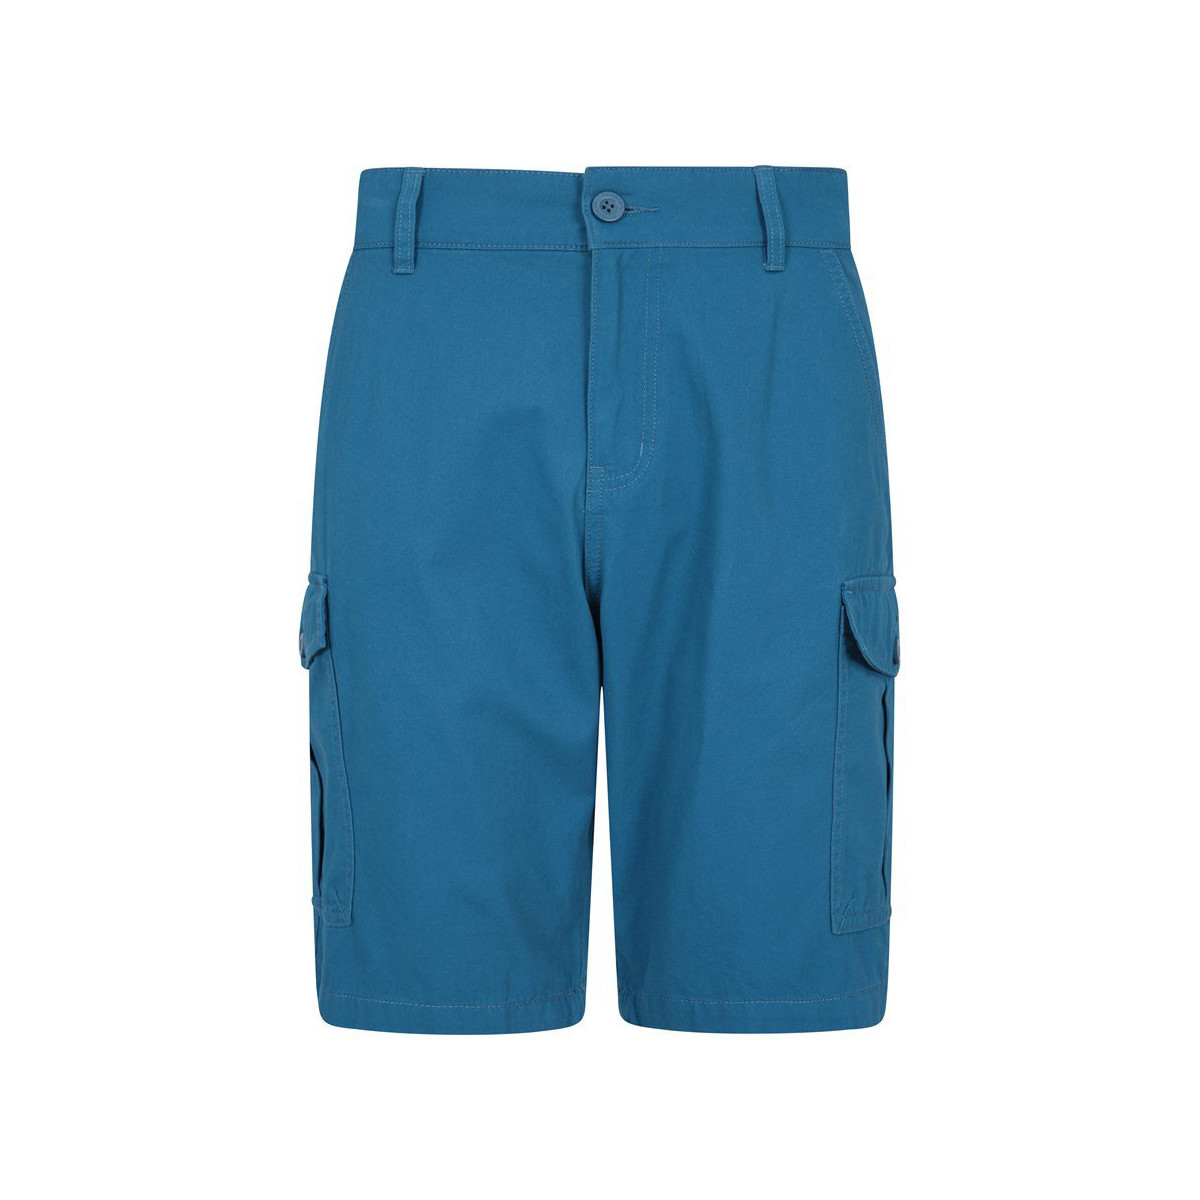 textil Hombre Shorts / Bermudas Mountain Warehouse Lakeside Azul